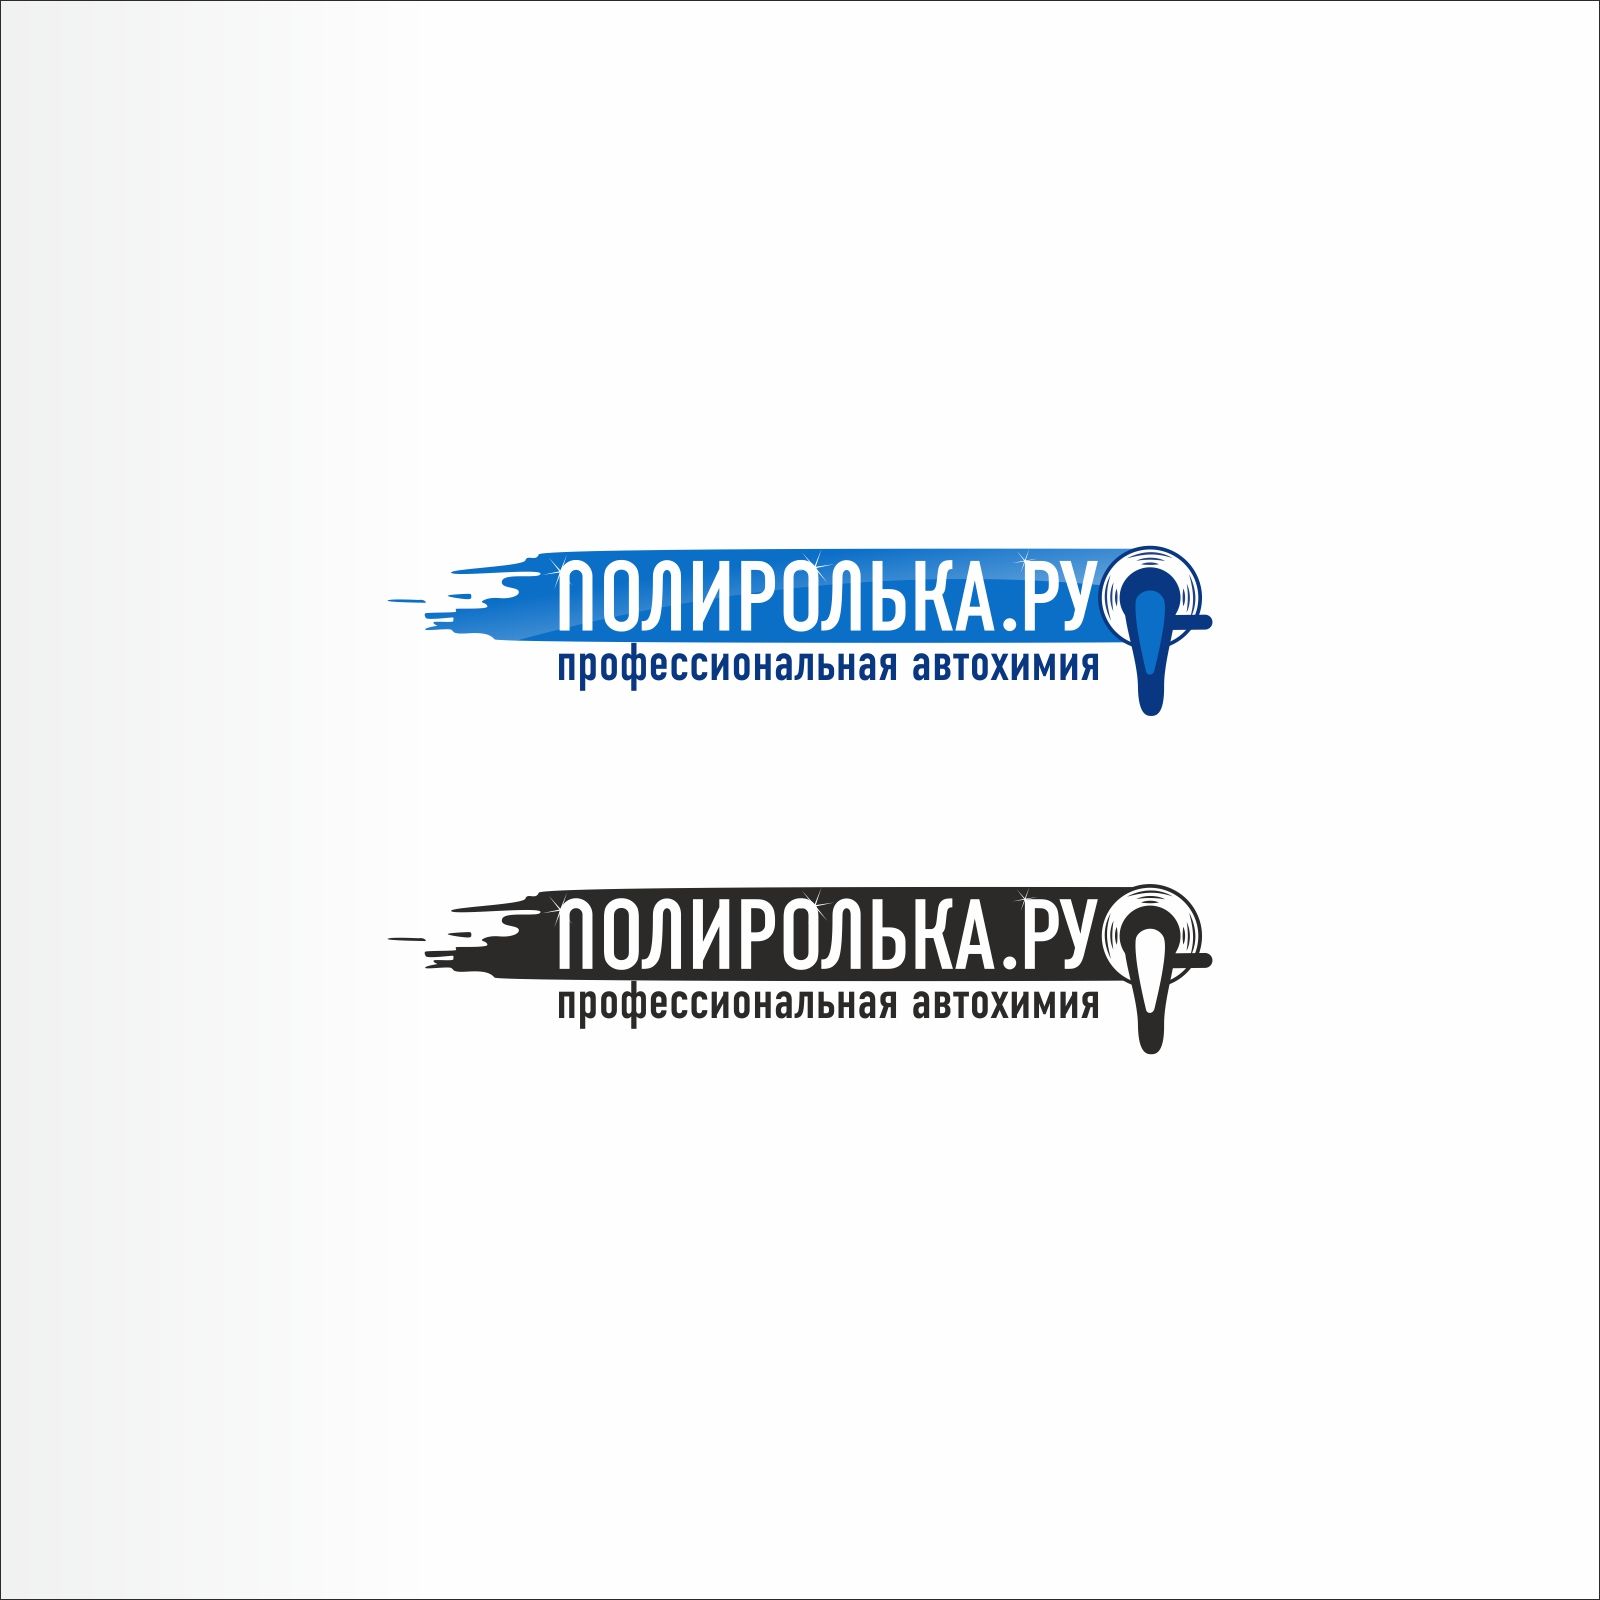 Логотип для интернет-магазина Полиролька.ру - дизайнер froogg